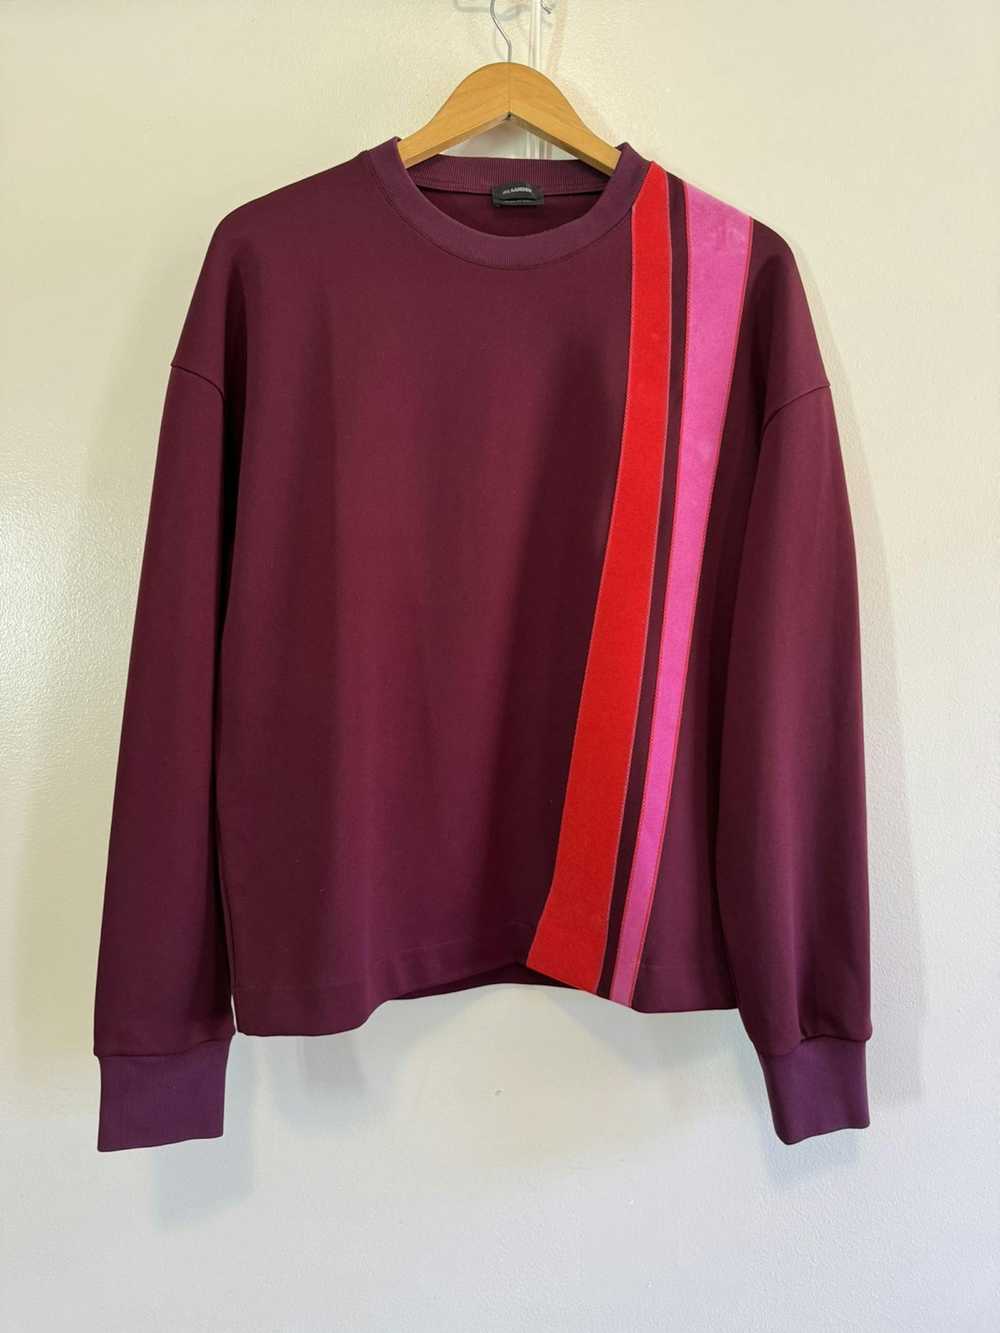 Jil Sander Jil Sander maroon burgundy sweatshirt … - image 1